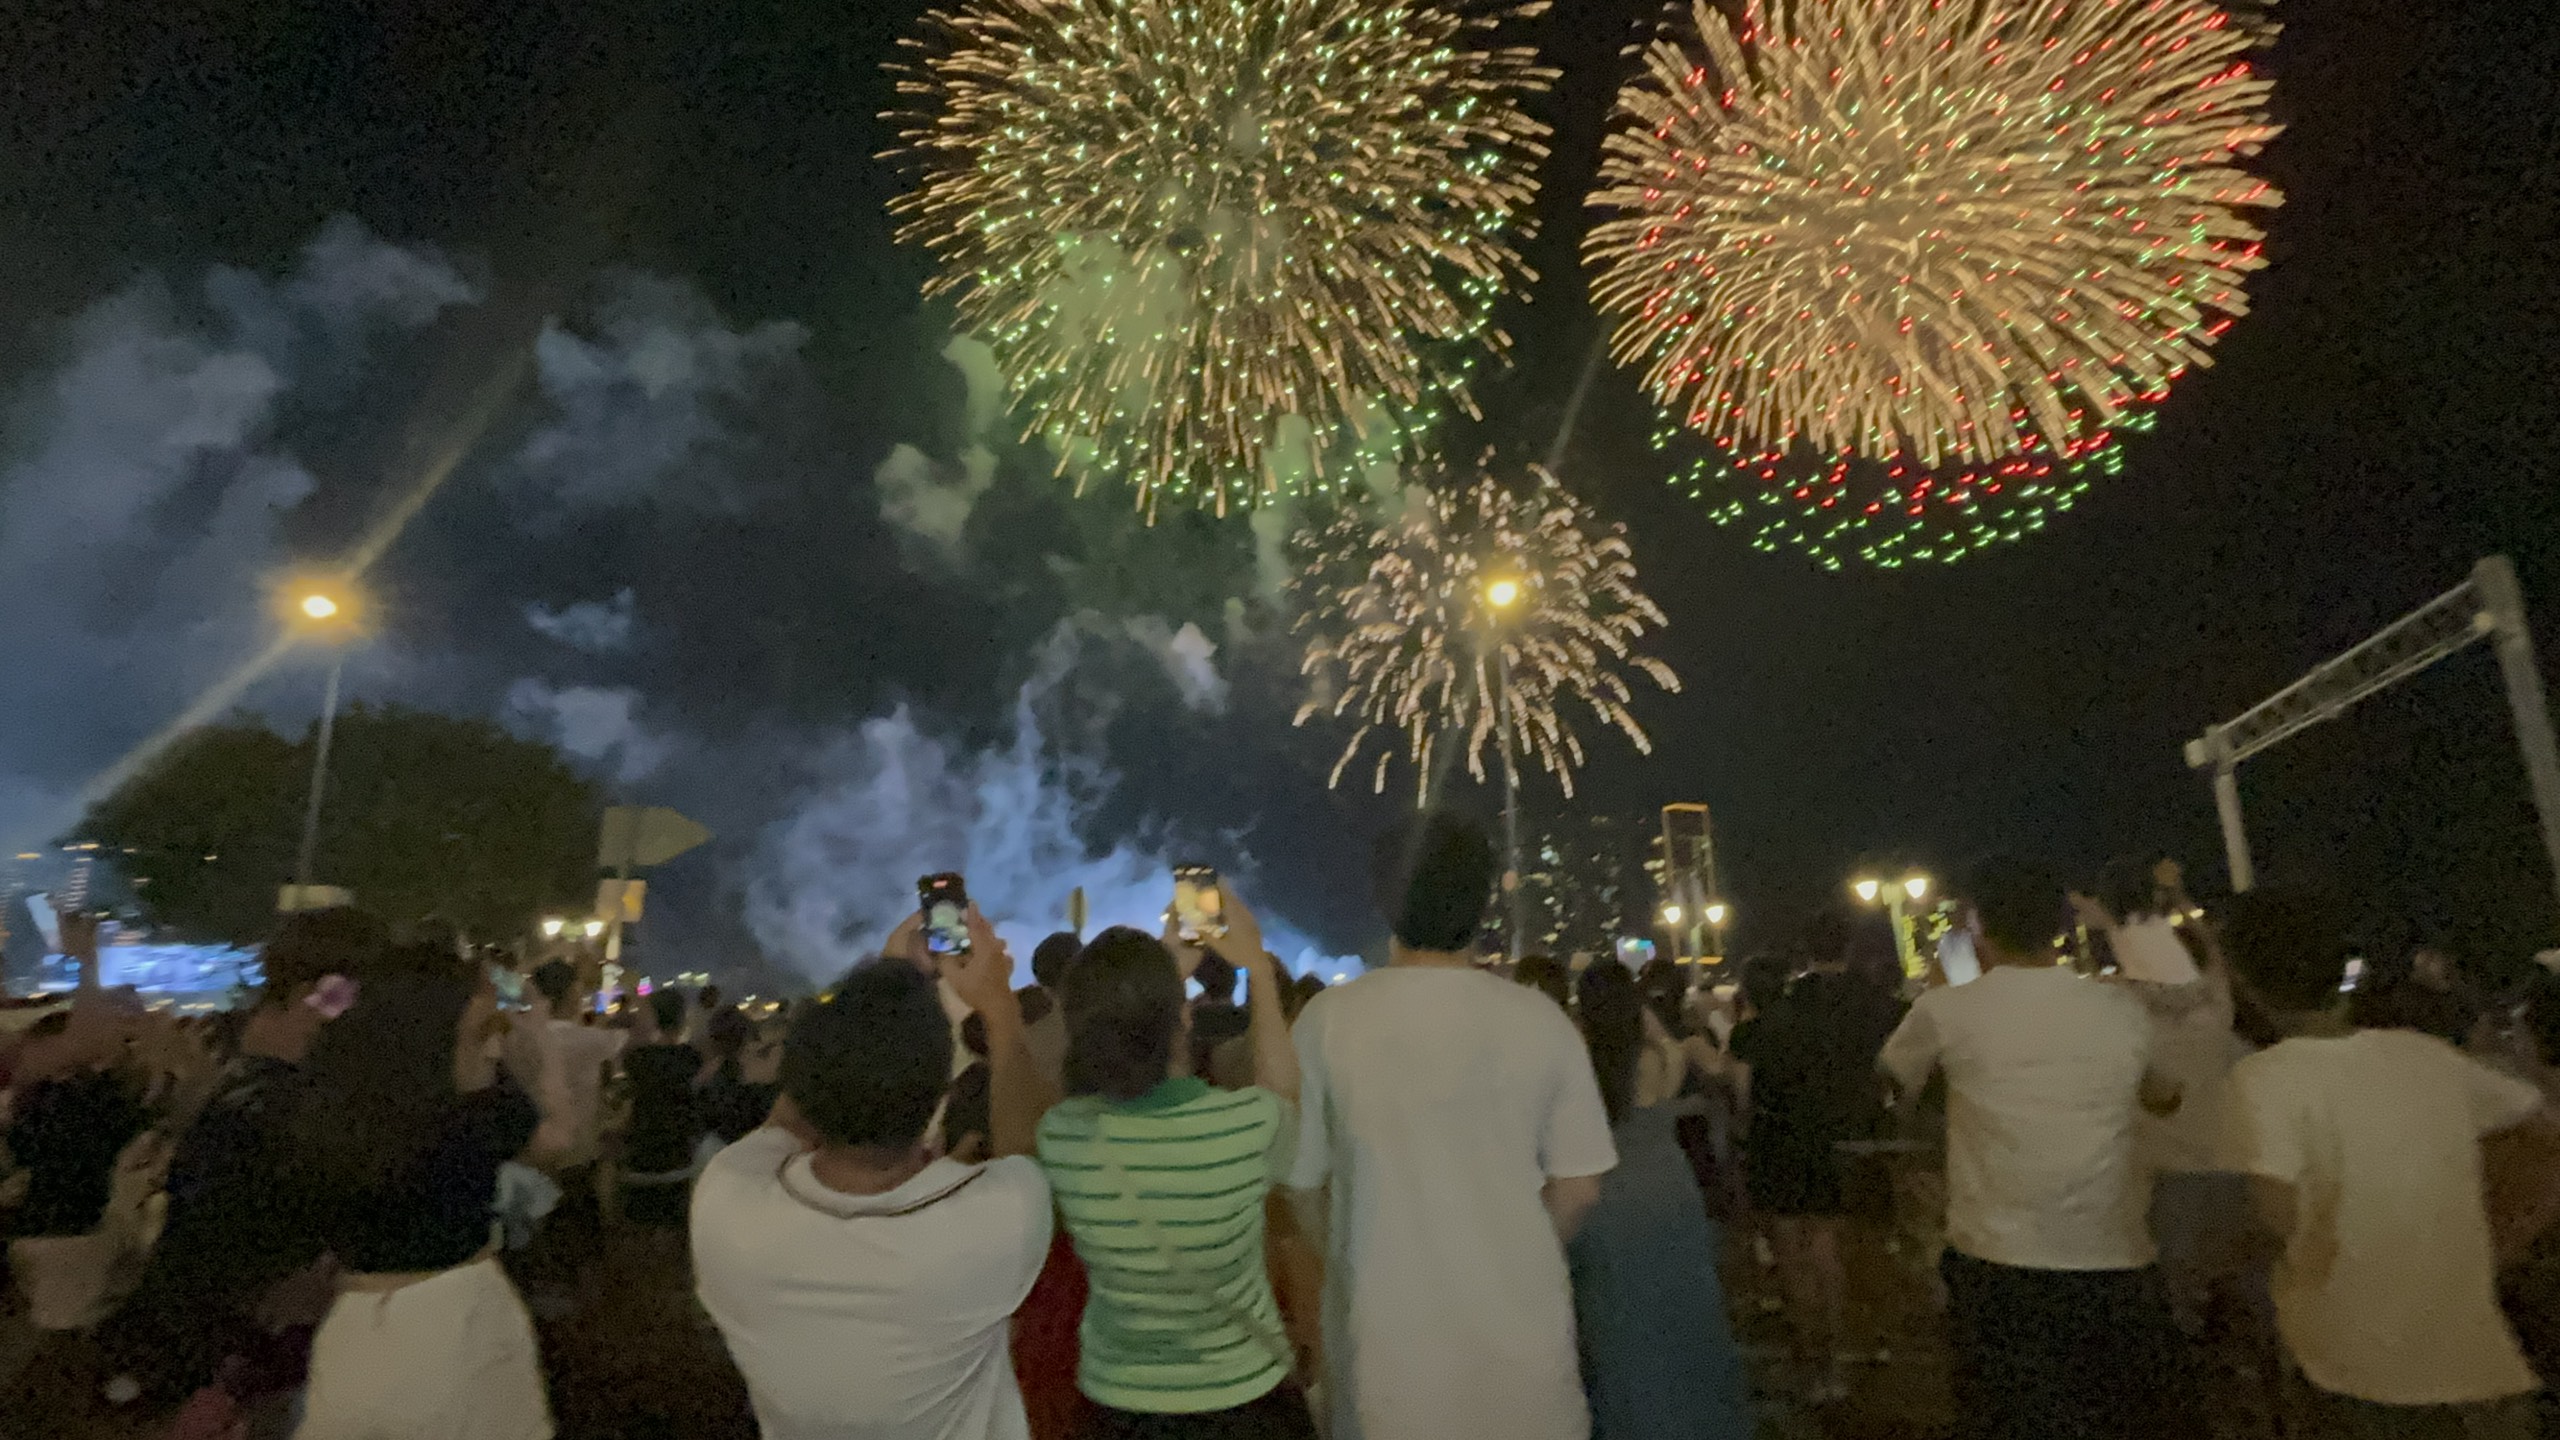             Pháo hoa rực sáng trên bầu trời TP HCM mừng lễ 30-4    